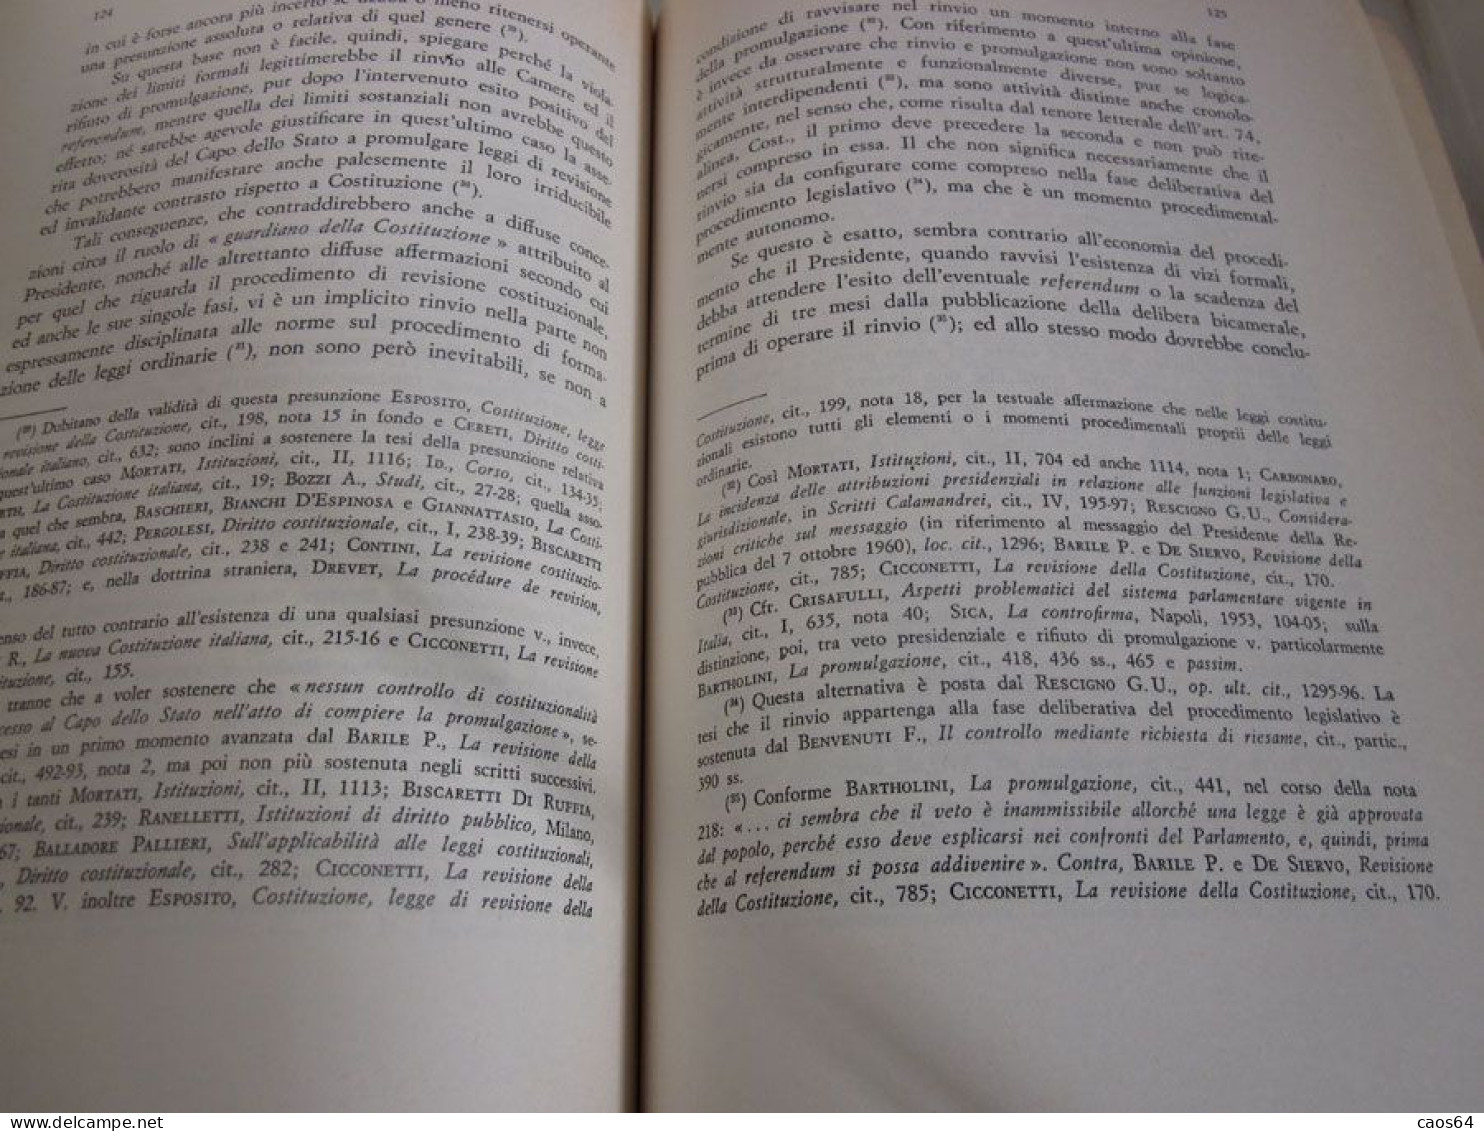 Introduzione Ad Uno Studio Sui Diritti Inviolabili Nella Costituzione Italiana 1972 Pierfrancesco Grossi CEDAM - Droit Et économie